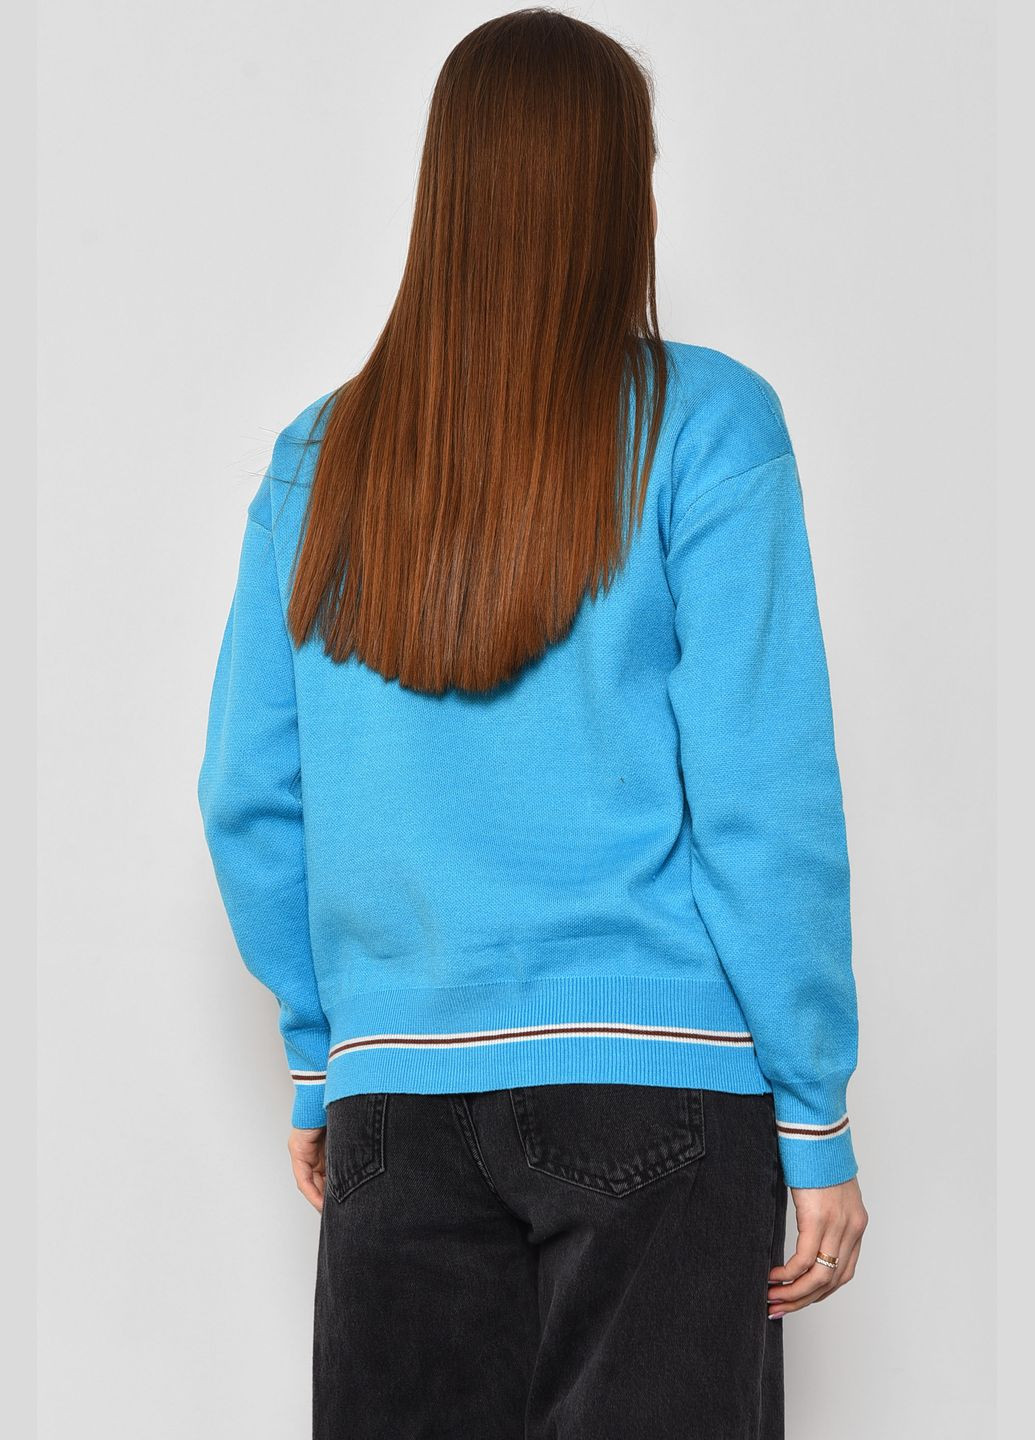 Голубой зимний свитер женский голубого цвета пуловер Let's Shop